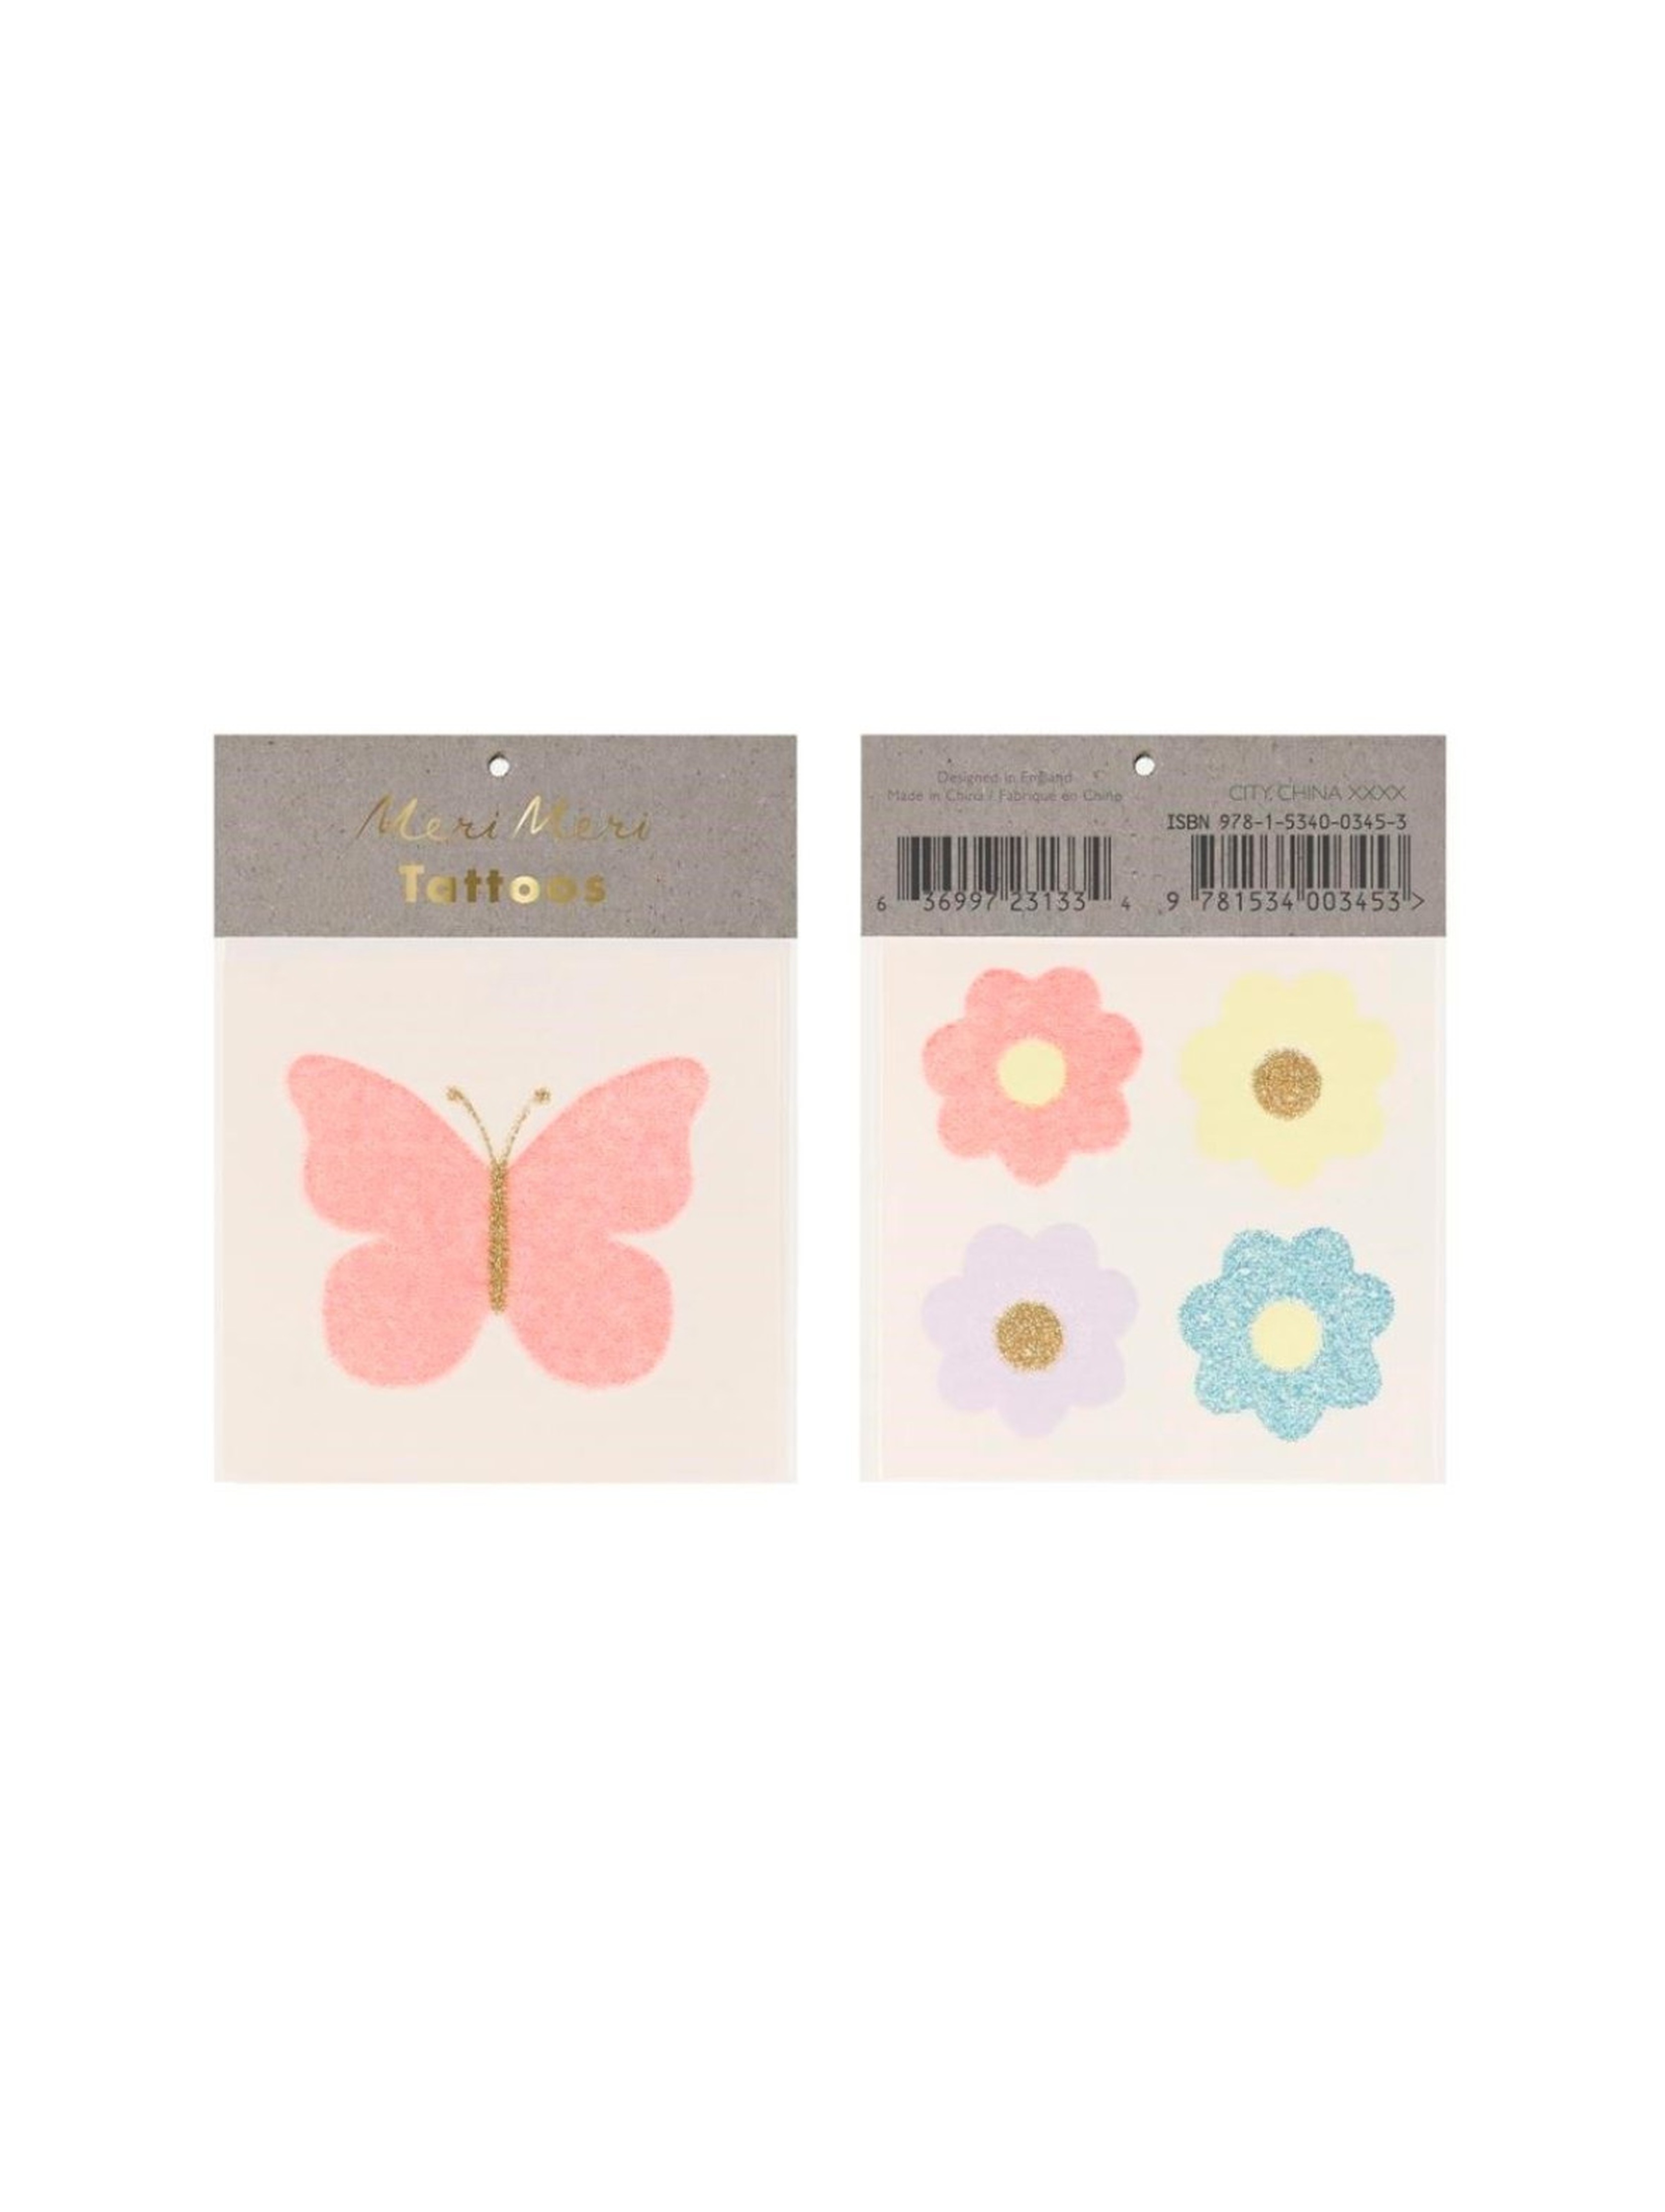 Tatuaże Motyl i kwiaty